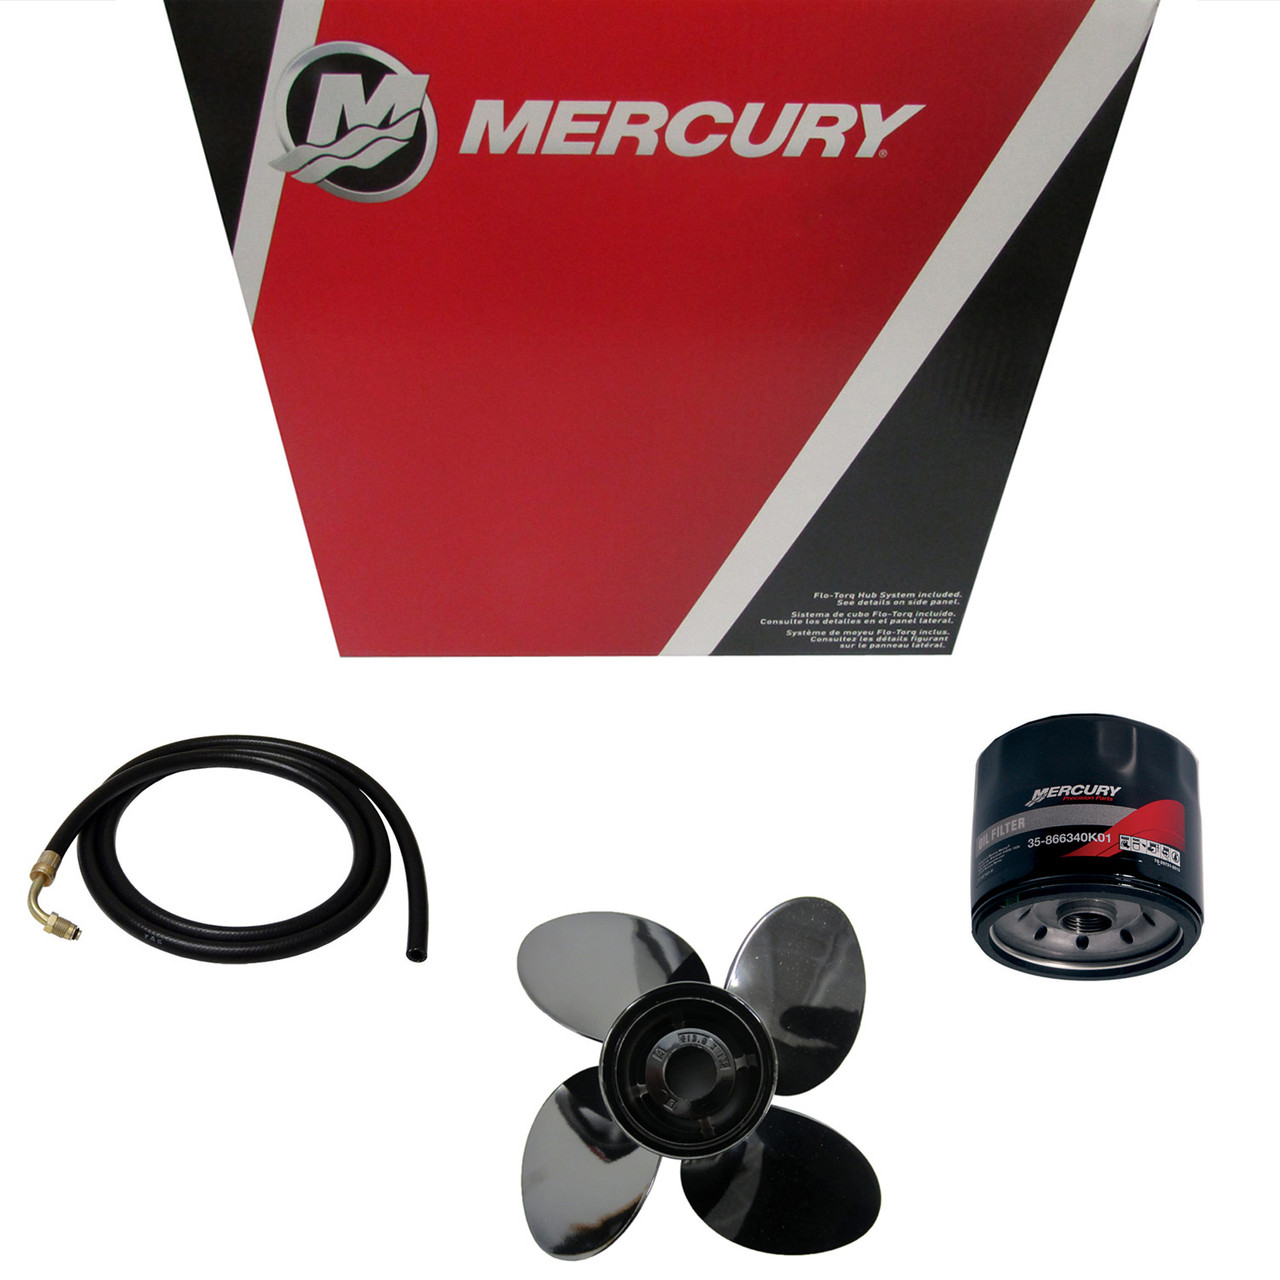 Mercury Marine / Mercruiser New OEM Carburetor, 824854T18